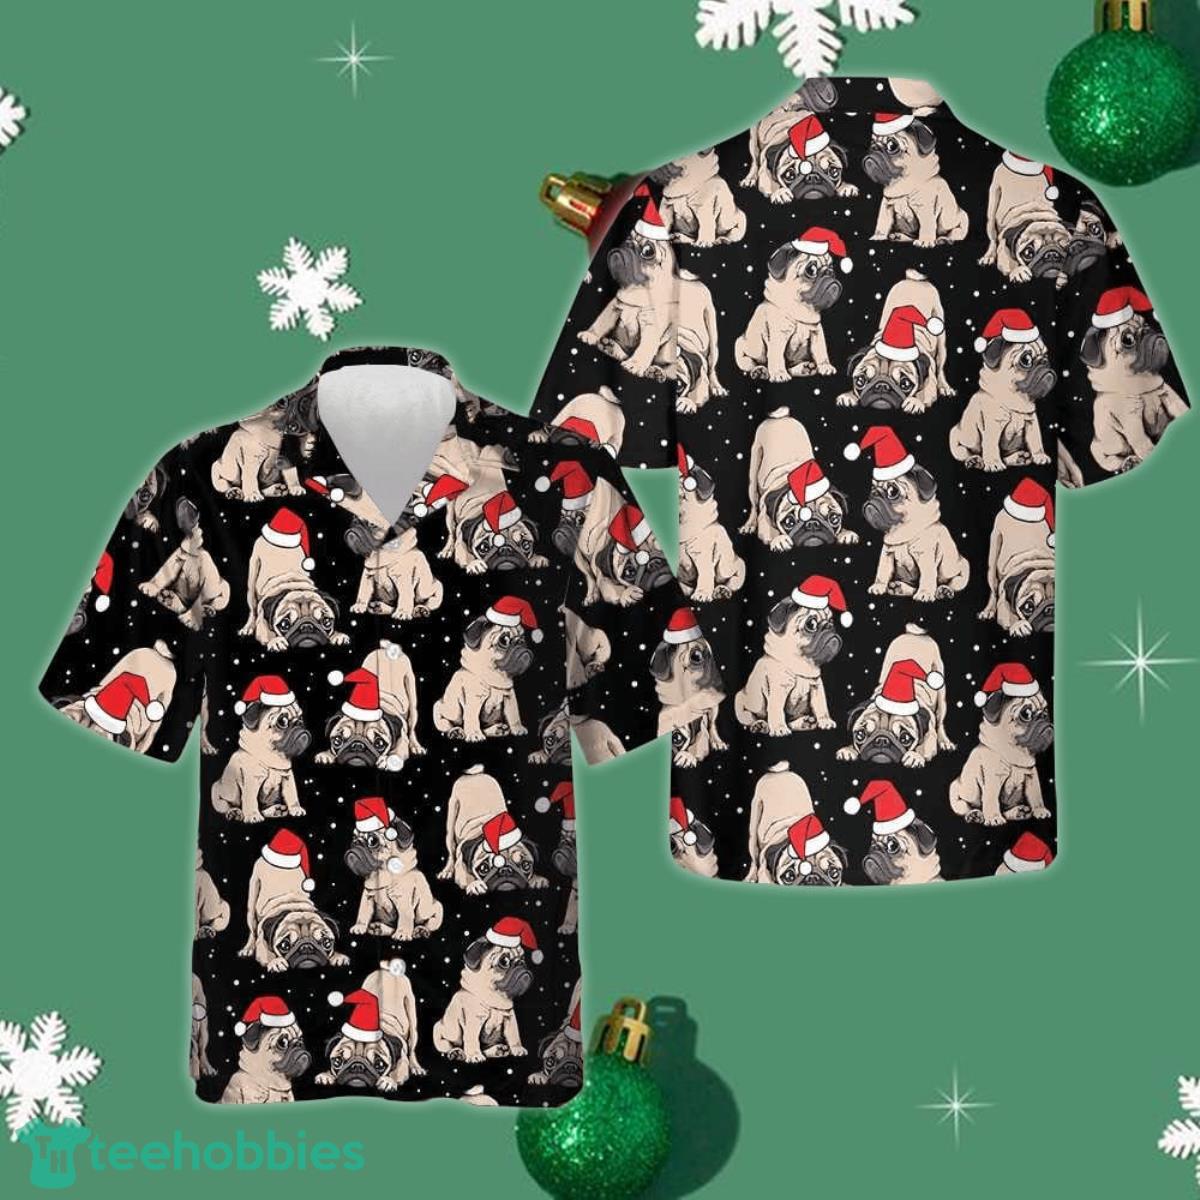 Adorable Christmas Pug Puppies Christmas Hawaiian Shirt Christmas Gifts For Dog Lovers Product Photo 1